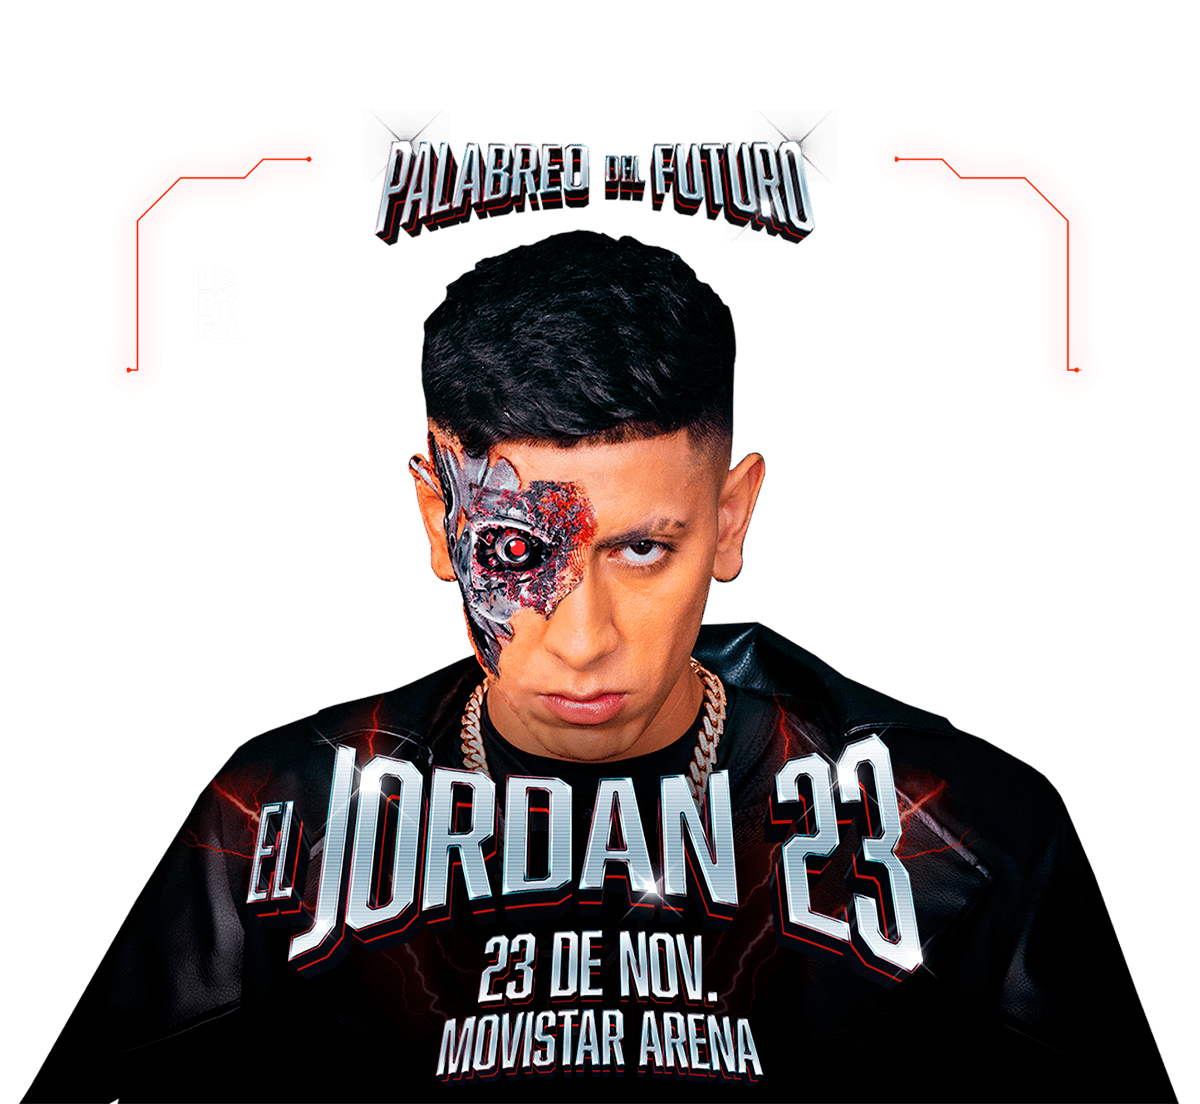 Jordan 23